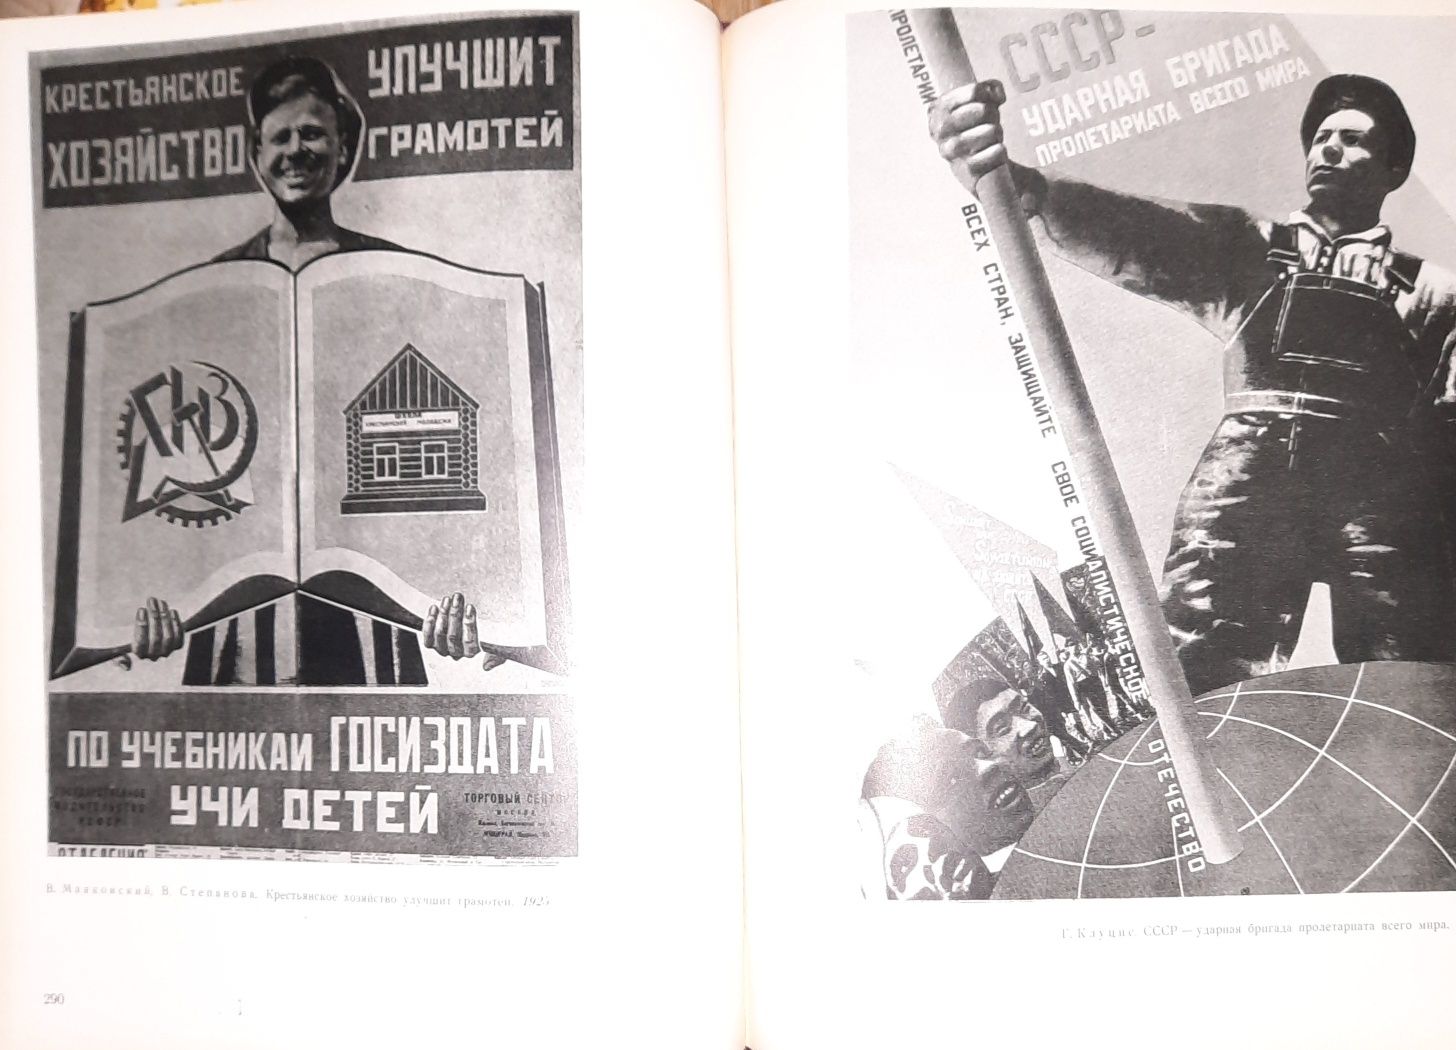 Советский политический плакат